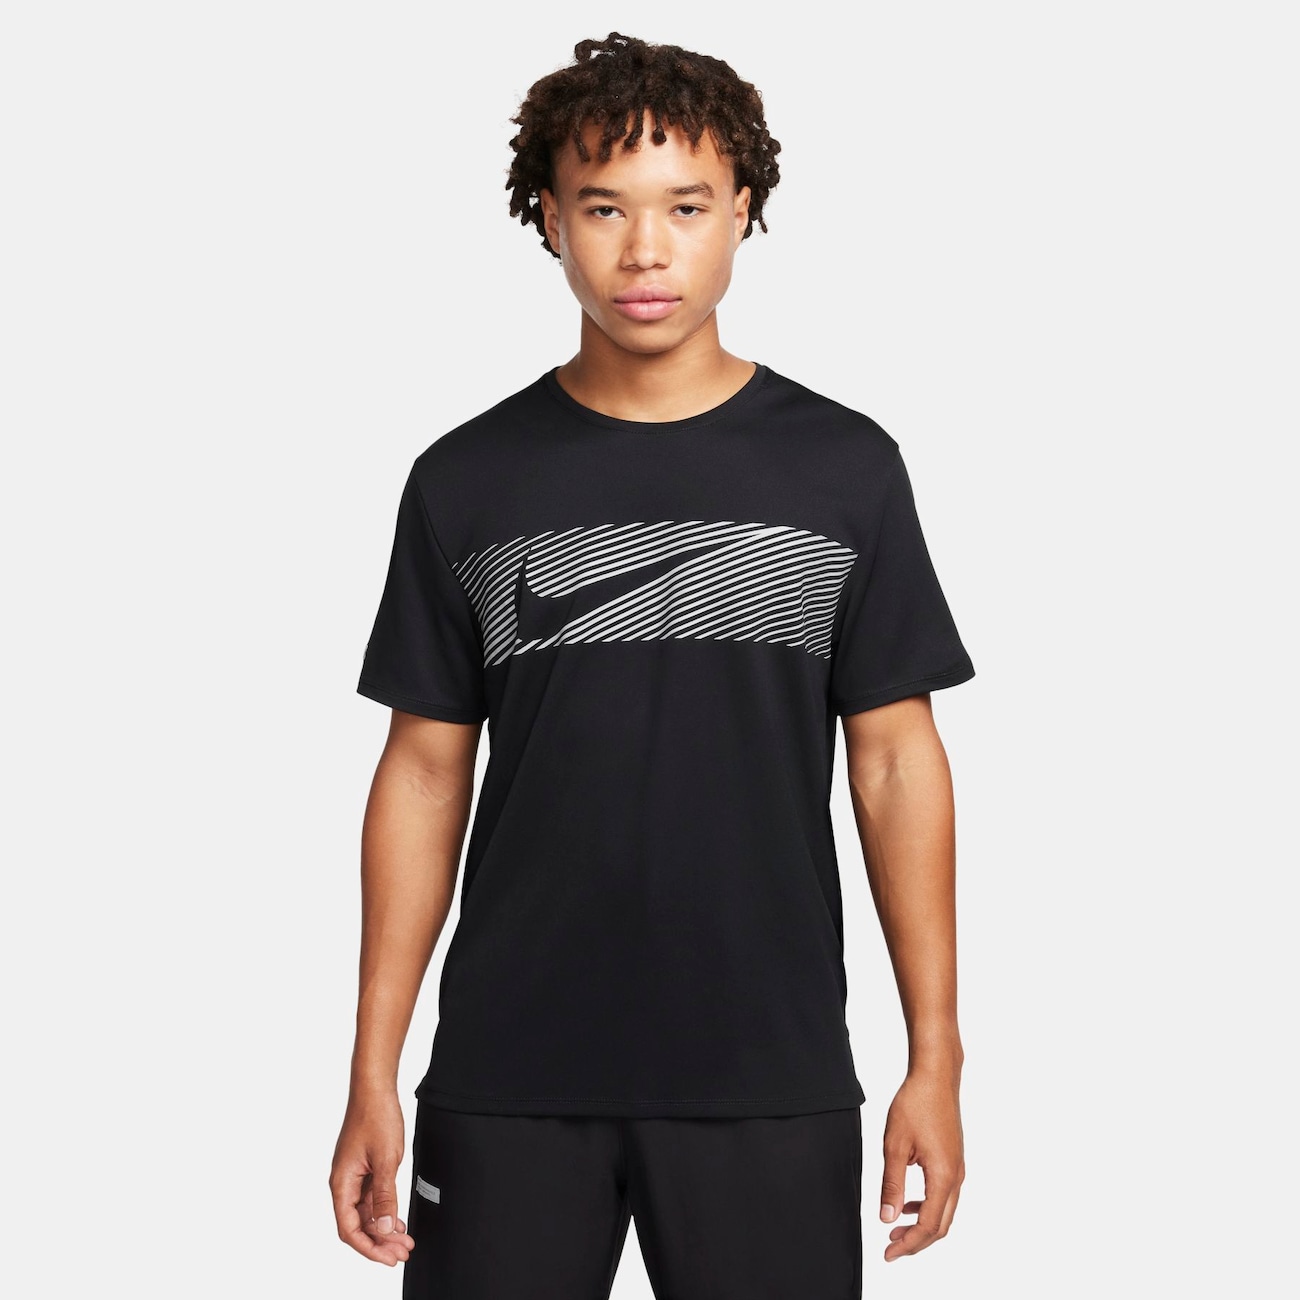 Camiseta Nike Flash Miler Masculina